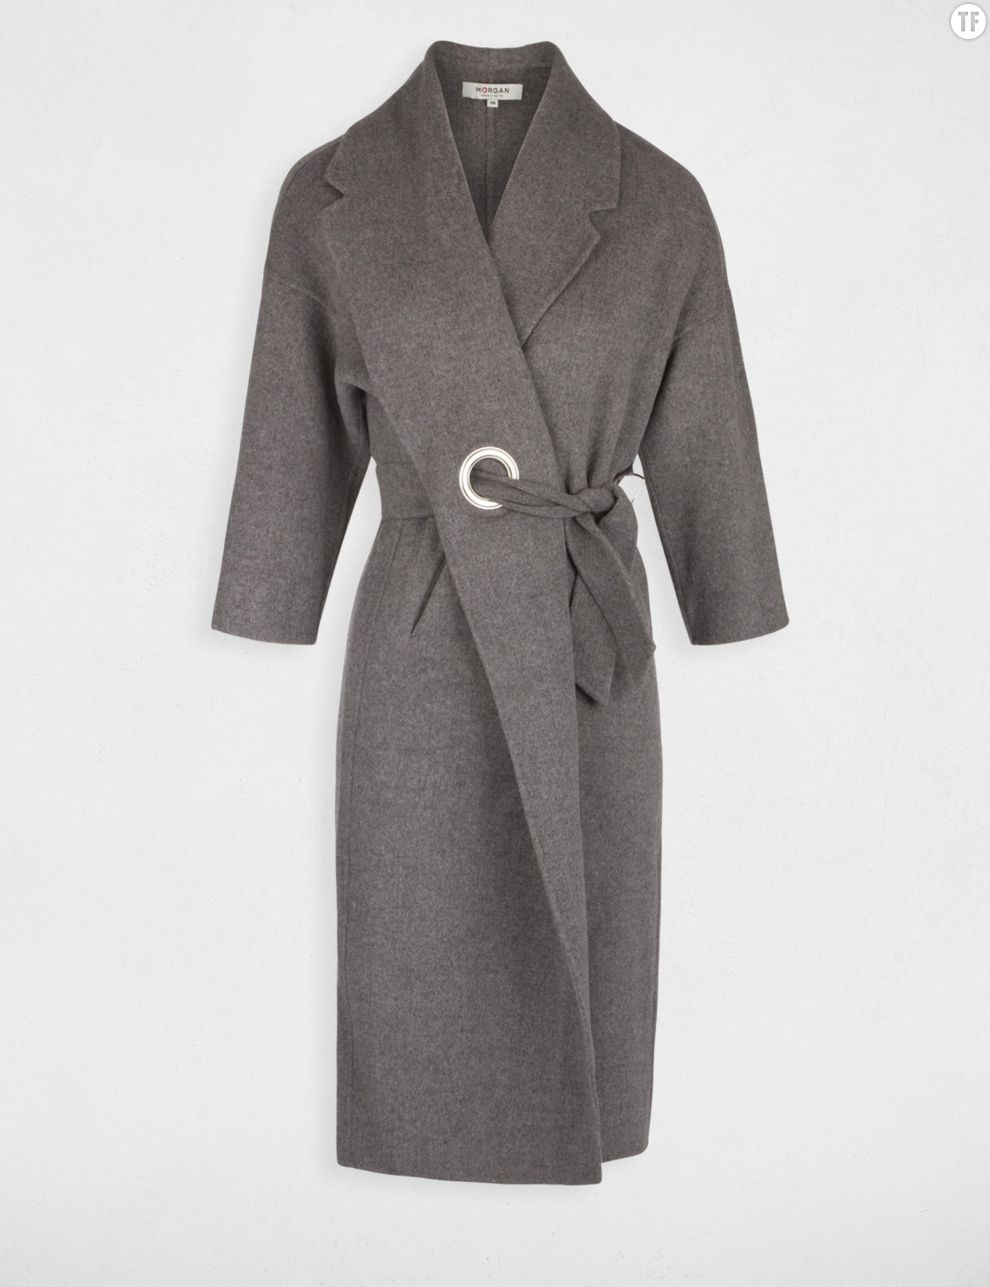  Manteau peignoir gris ceinturé Morgan, 180€ 